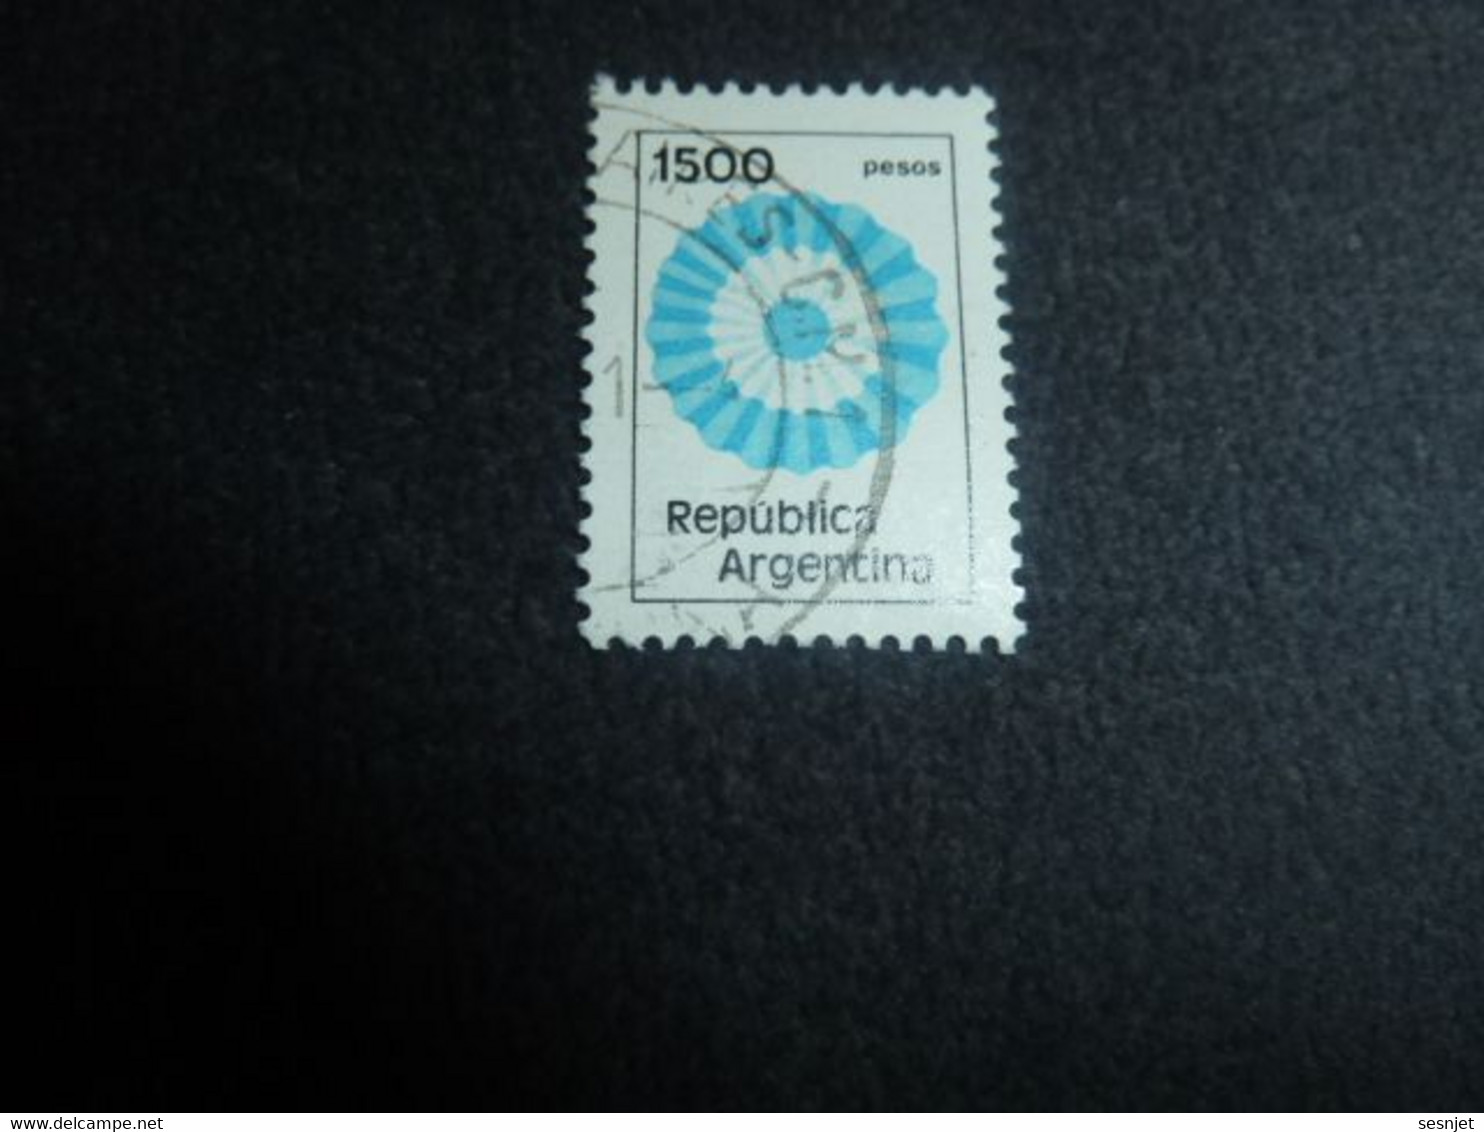 Republica Argentina - Rosace - 1500 Pesos - Yt 1280 - 1288 - Multicolore - Oblitéré - Année 1981 - - Usados